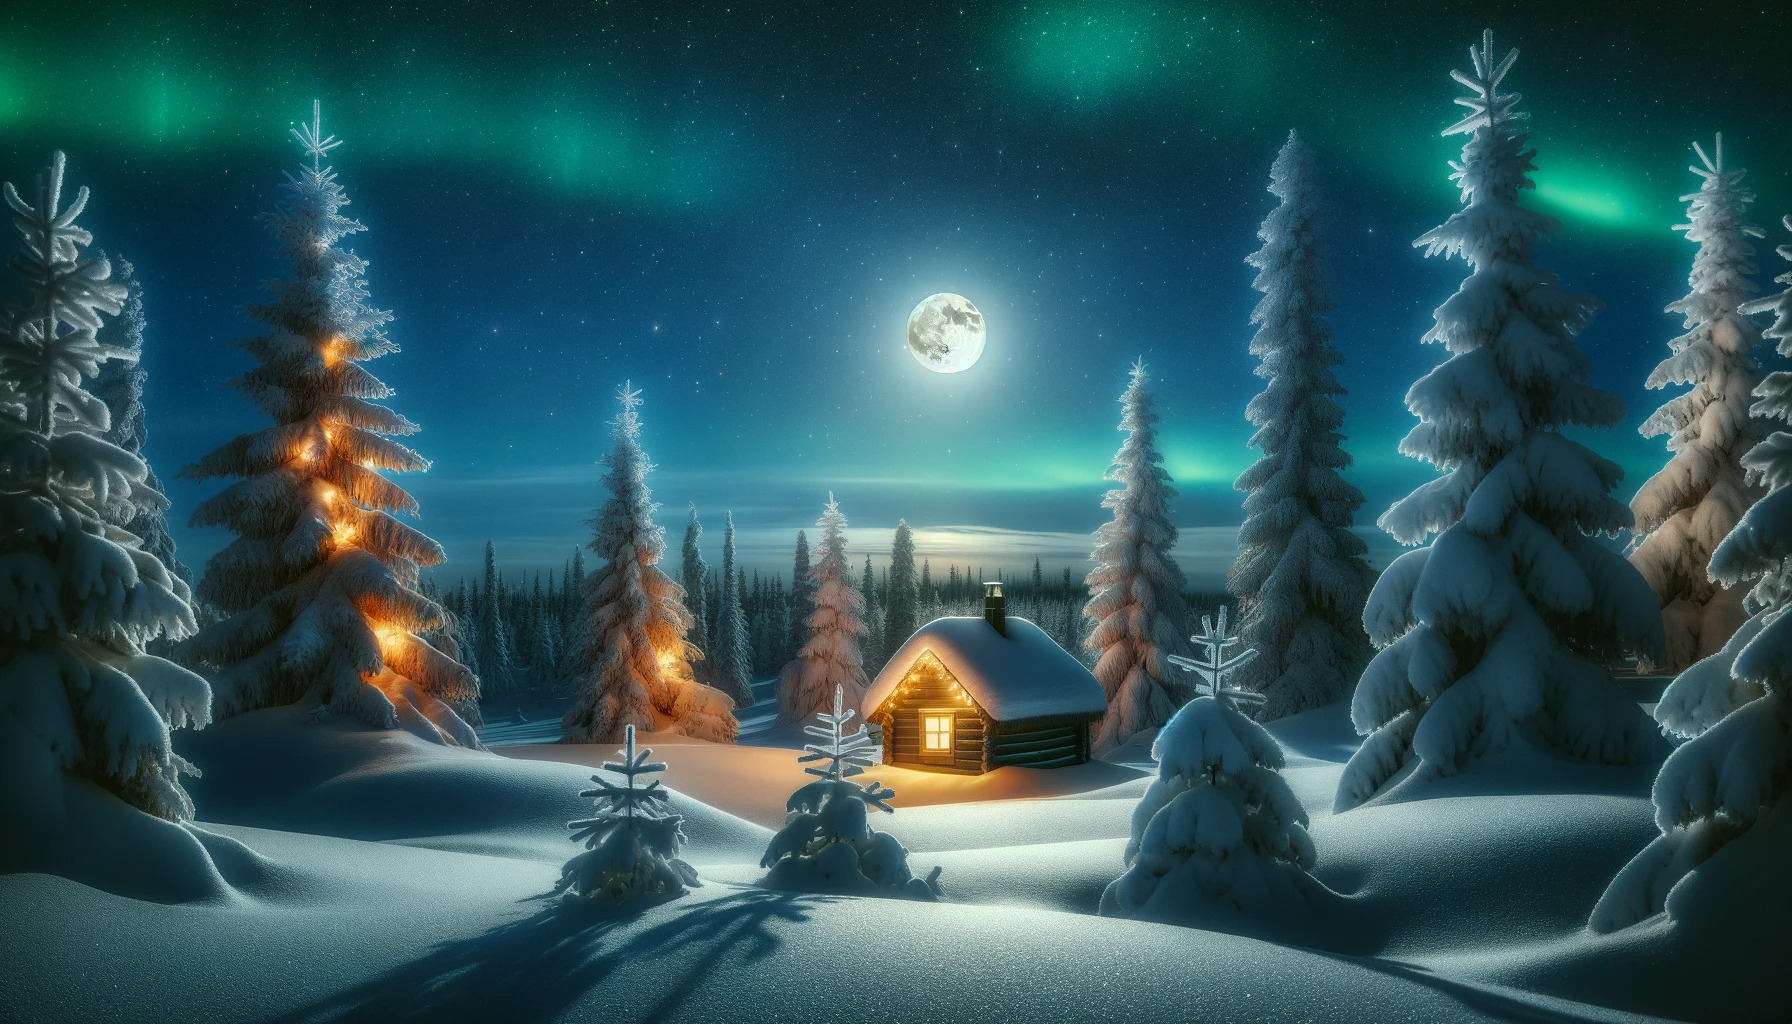 Arriva il Solstizio d'Inverno: Giove danzerà con la Luna nella notte più  lunga dell'anno